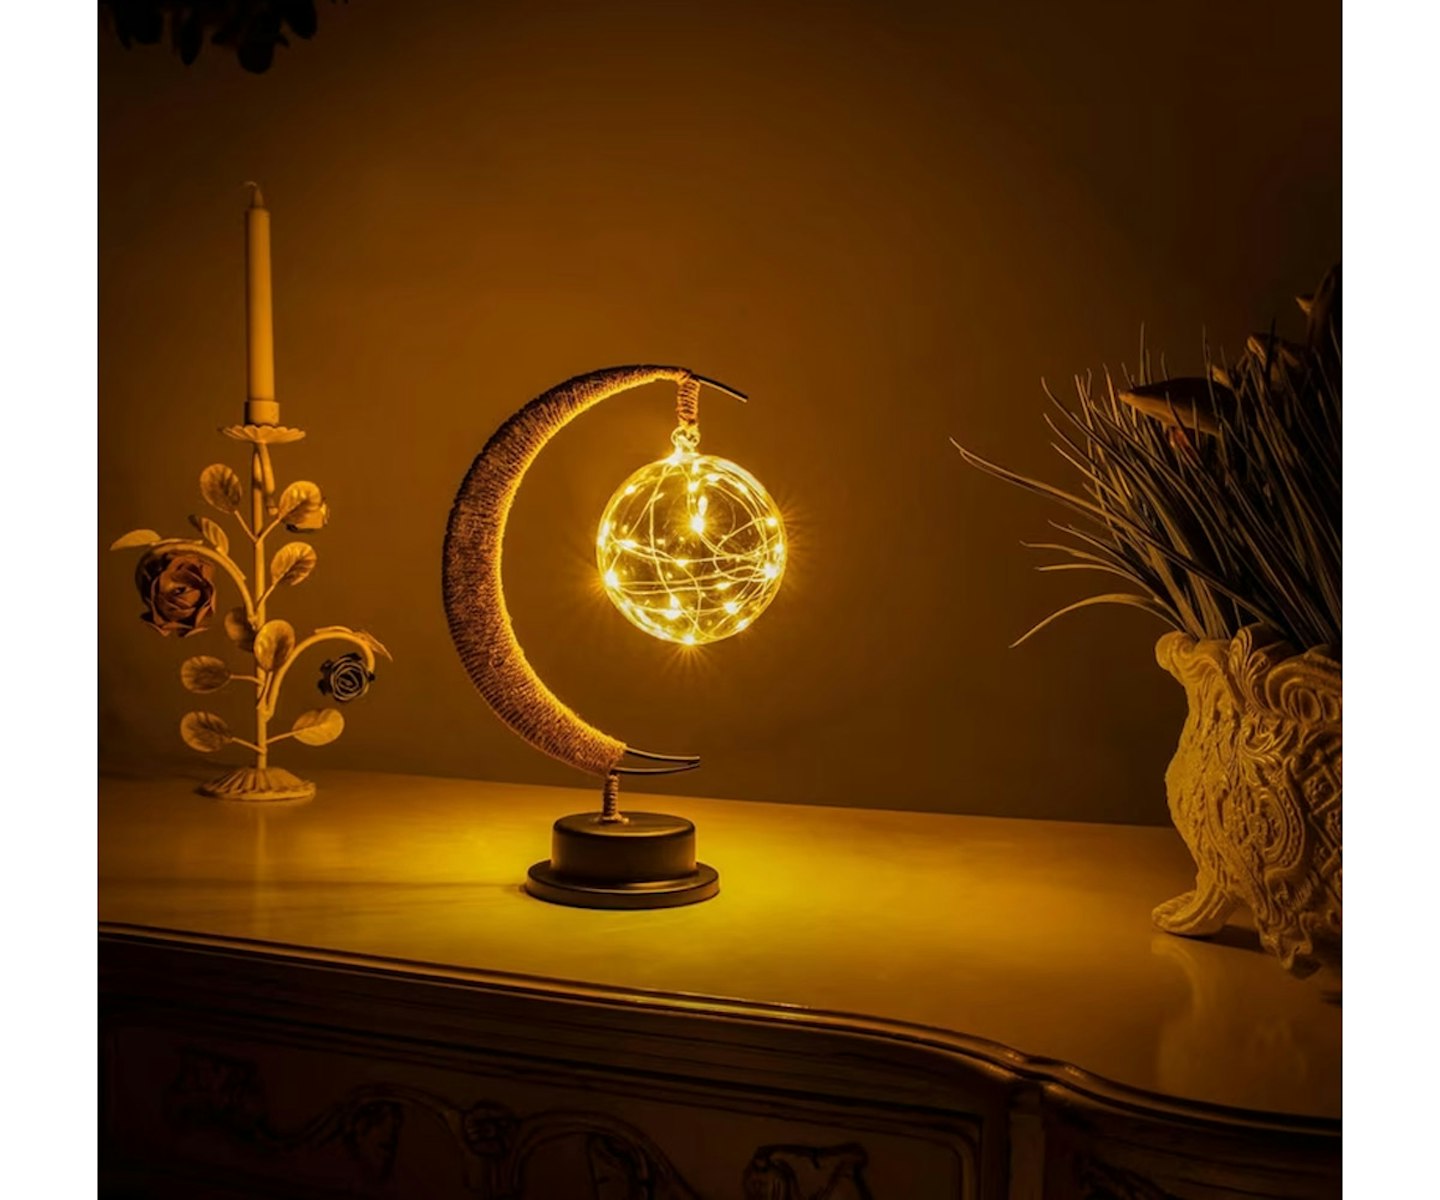 The Original Moon Lamp - Original Moon Lamp